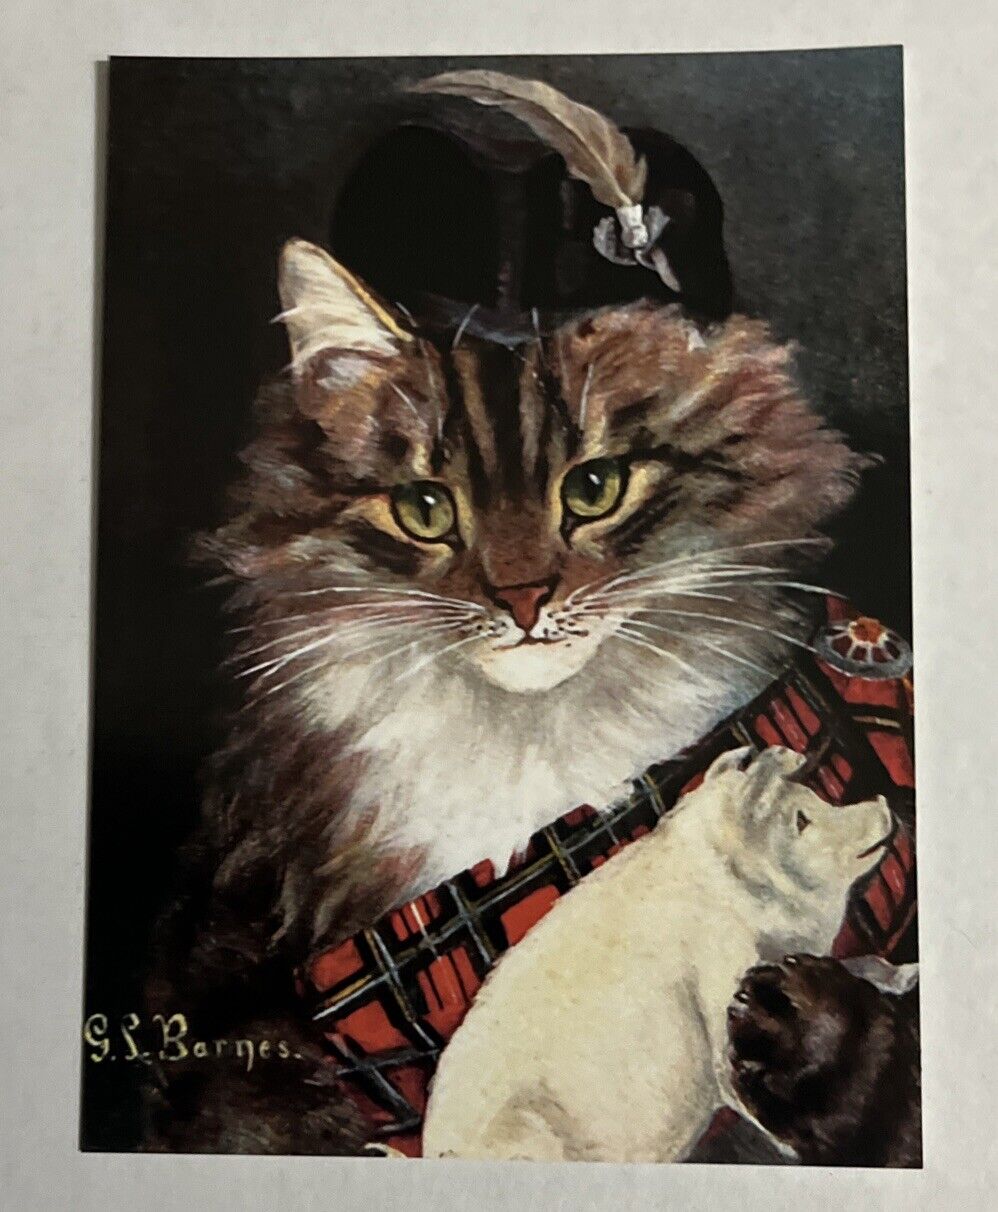 POSTCARD SCOTTISH CAT WITH PIG G L BARNES OILETTE VINTAGE ART REPRINT 4.25x5.75”